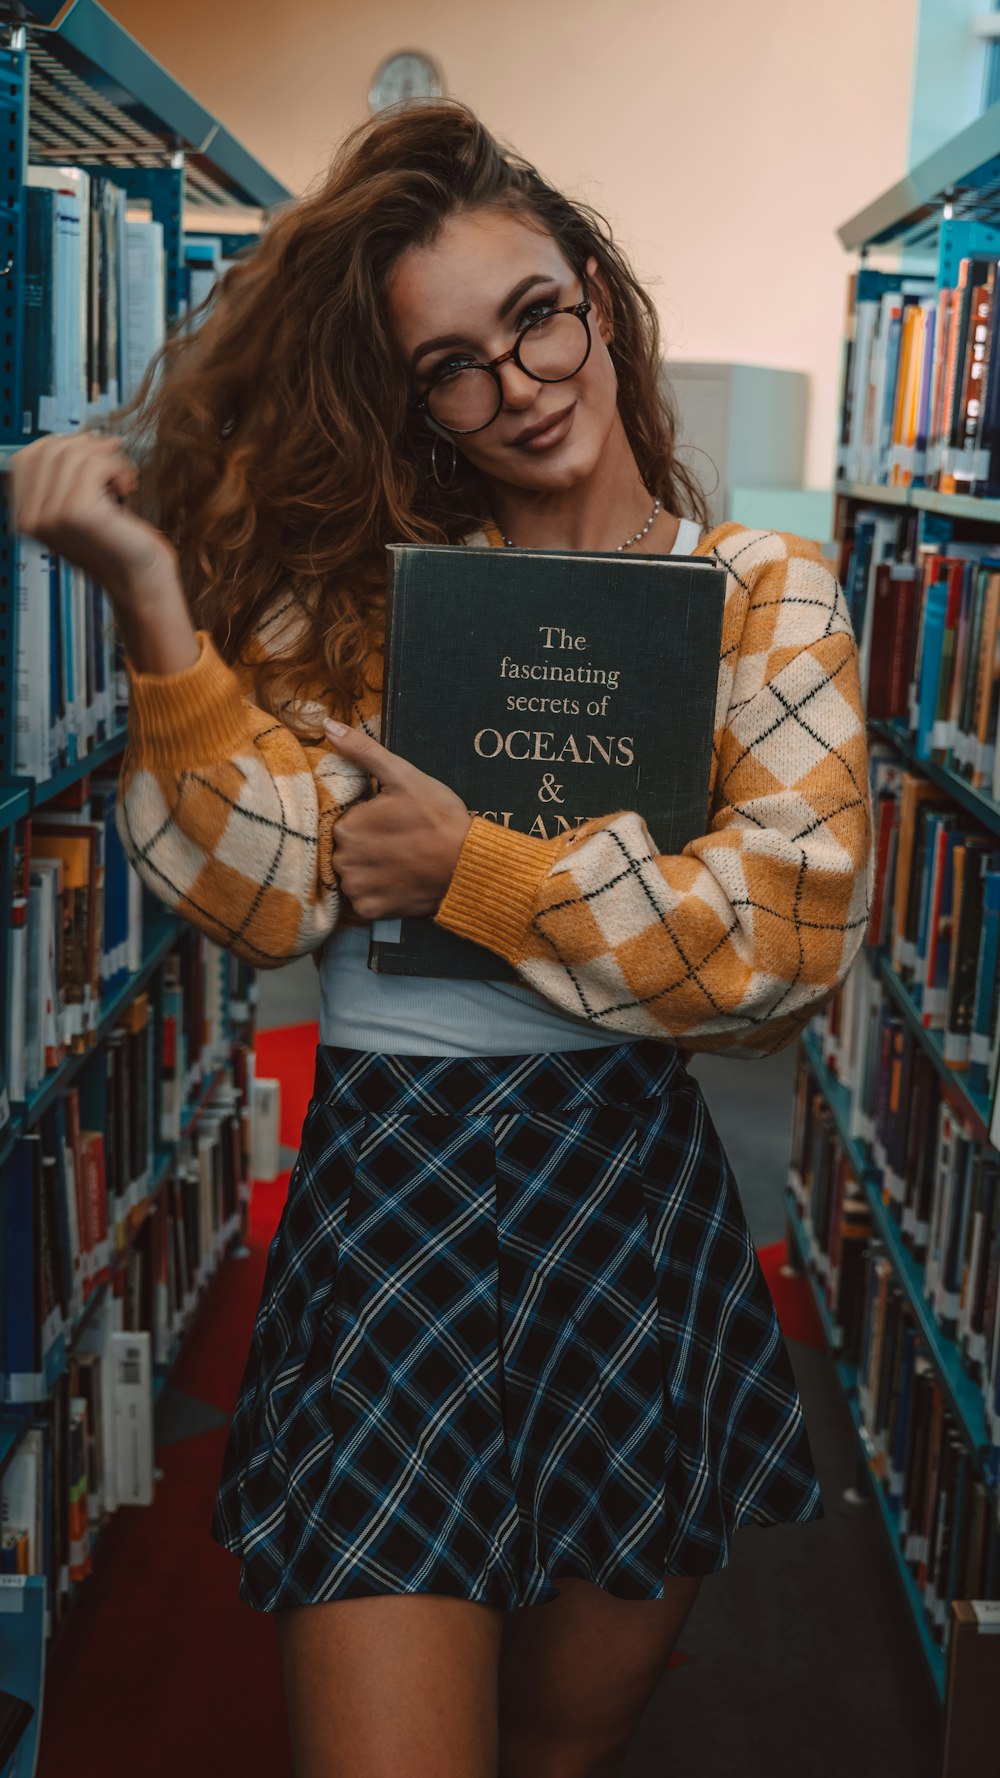 Eine Frau hält ein Buch in einer Bibliothek